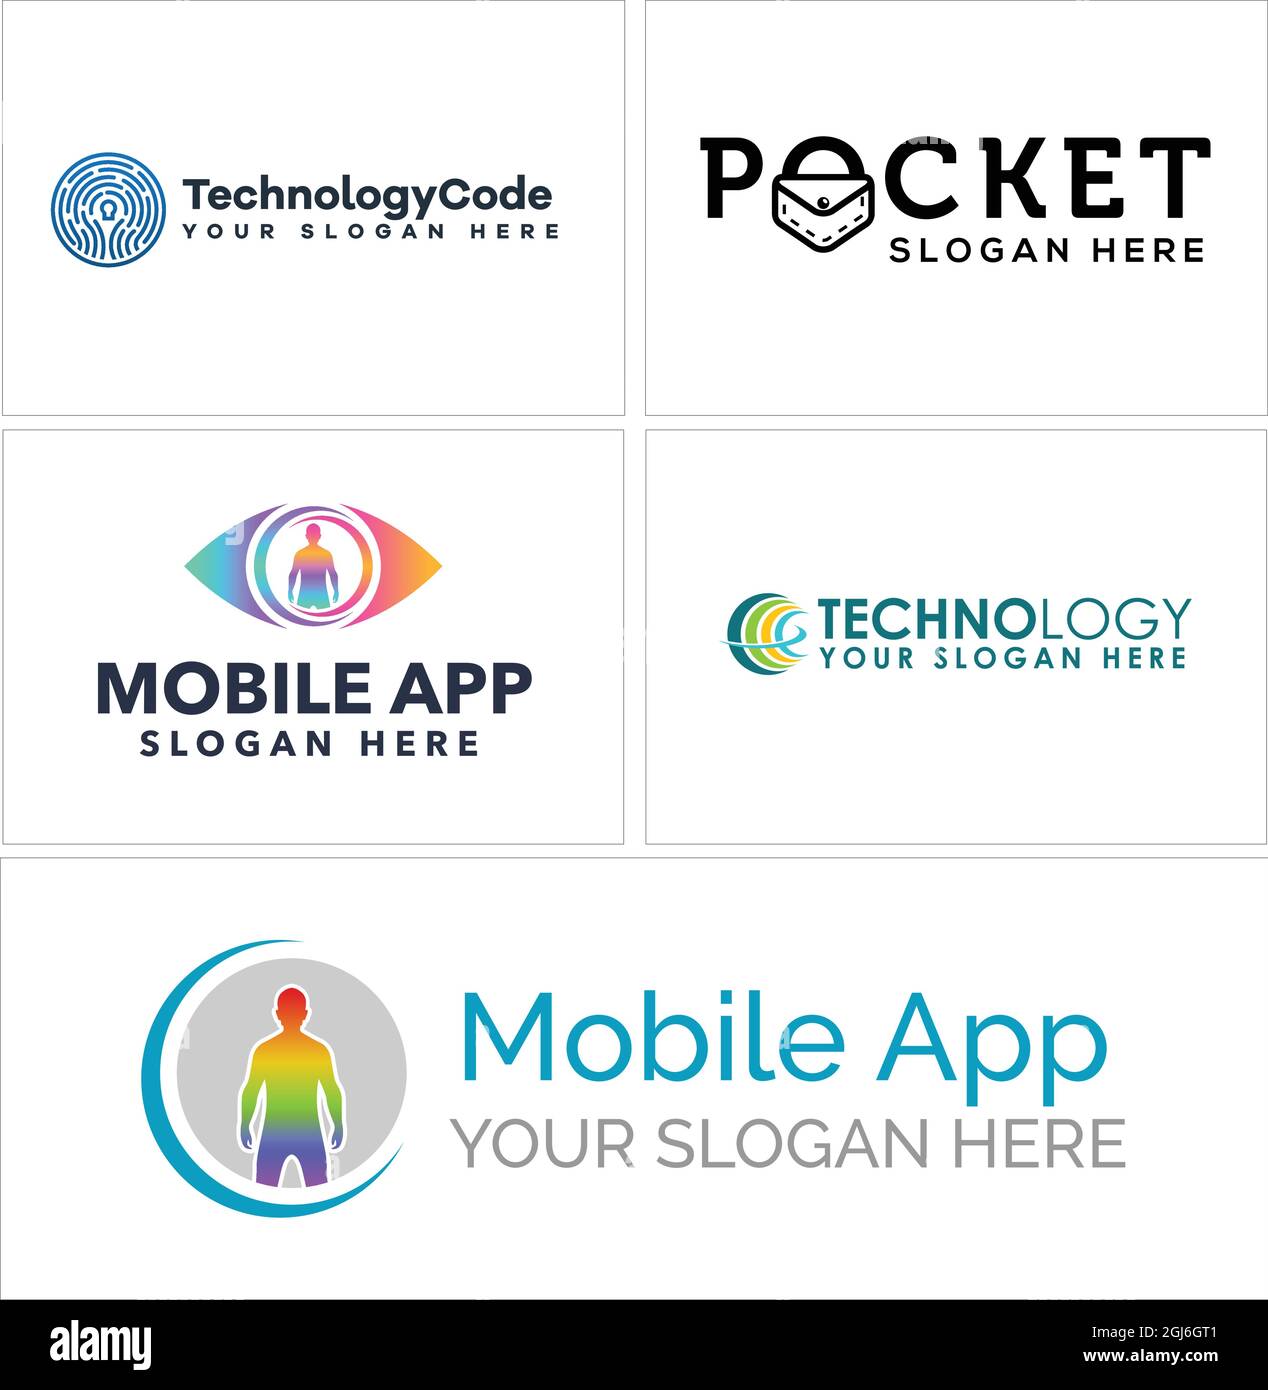 Mobile app technology logo design Stock Vector